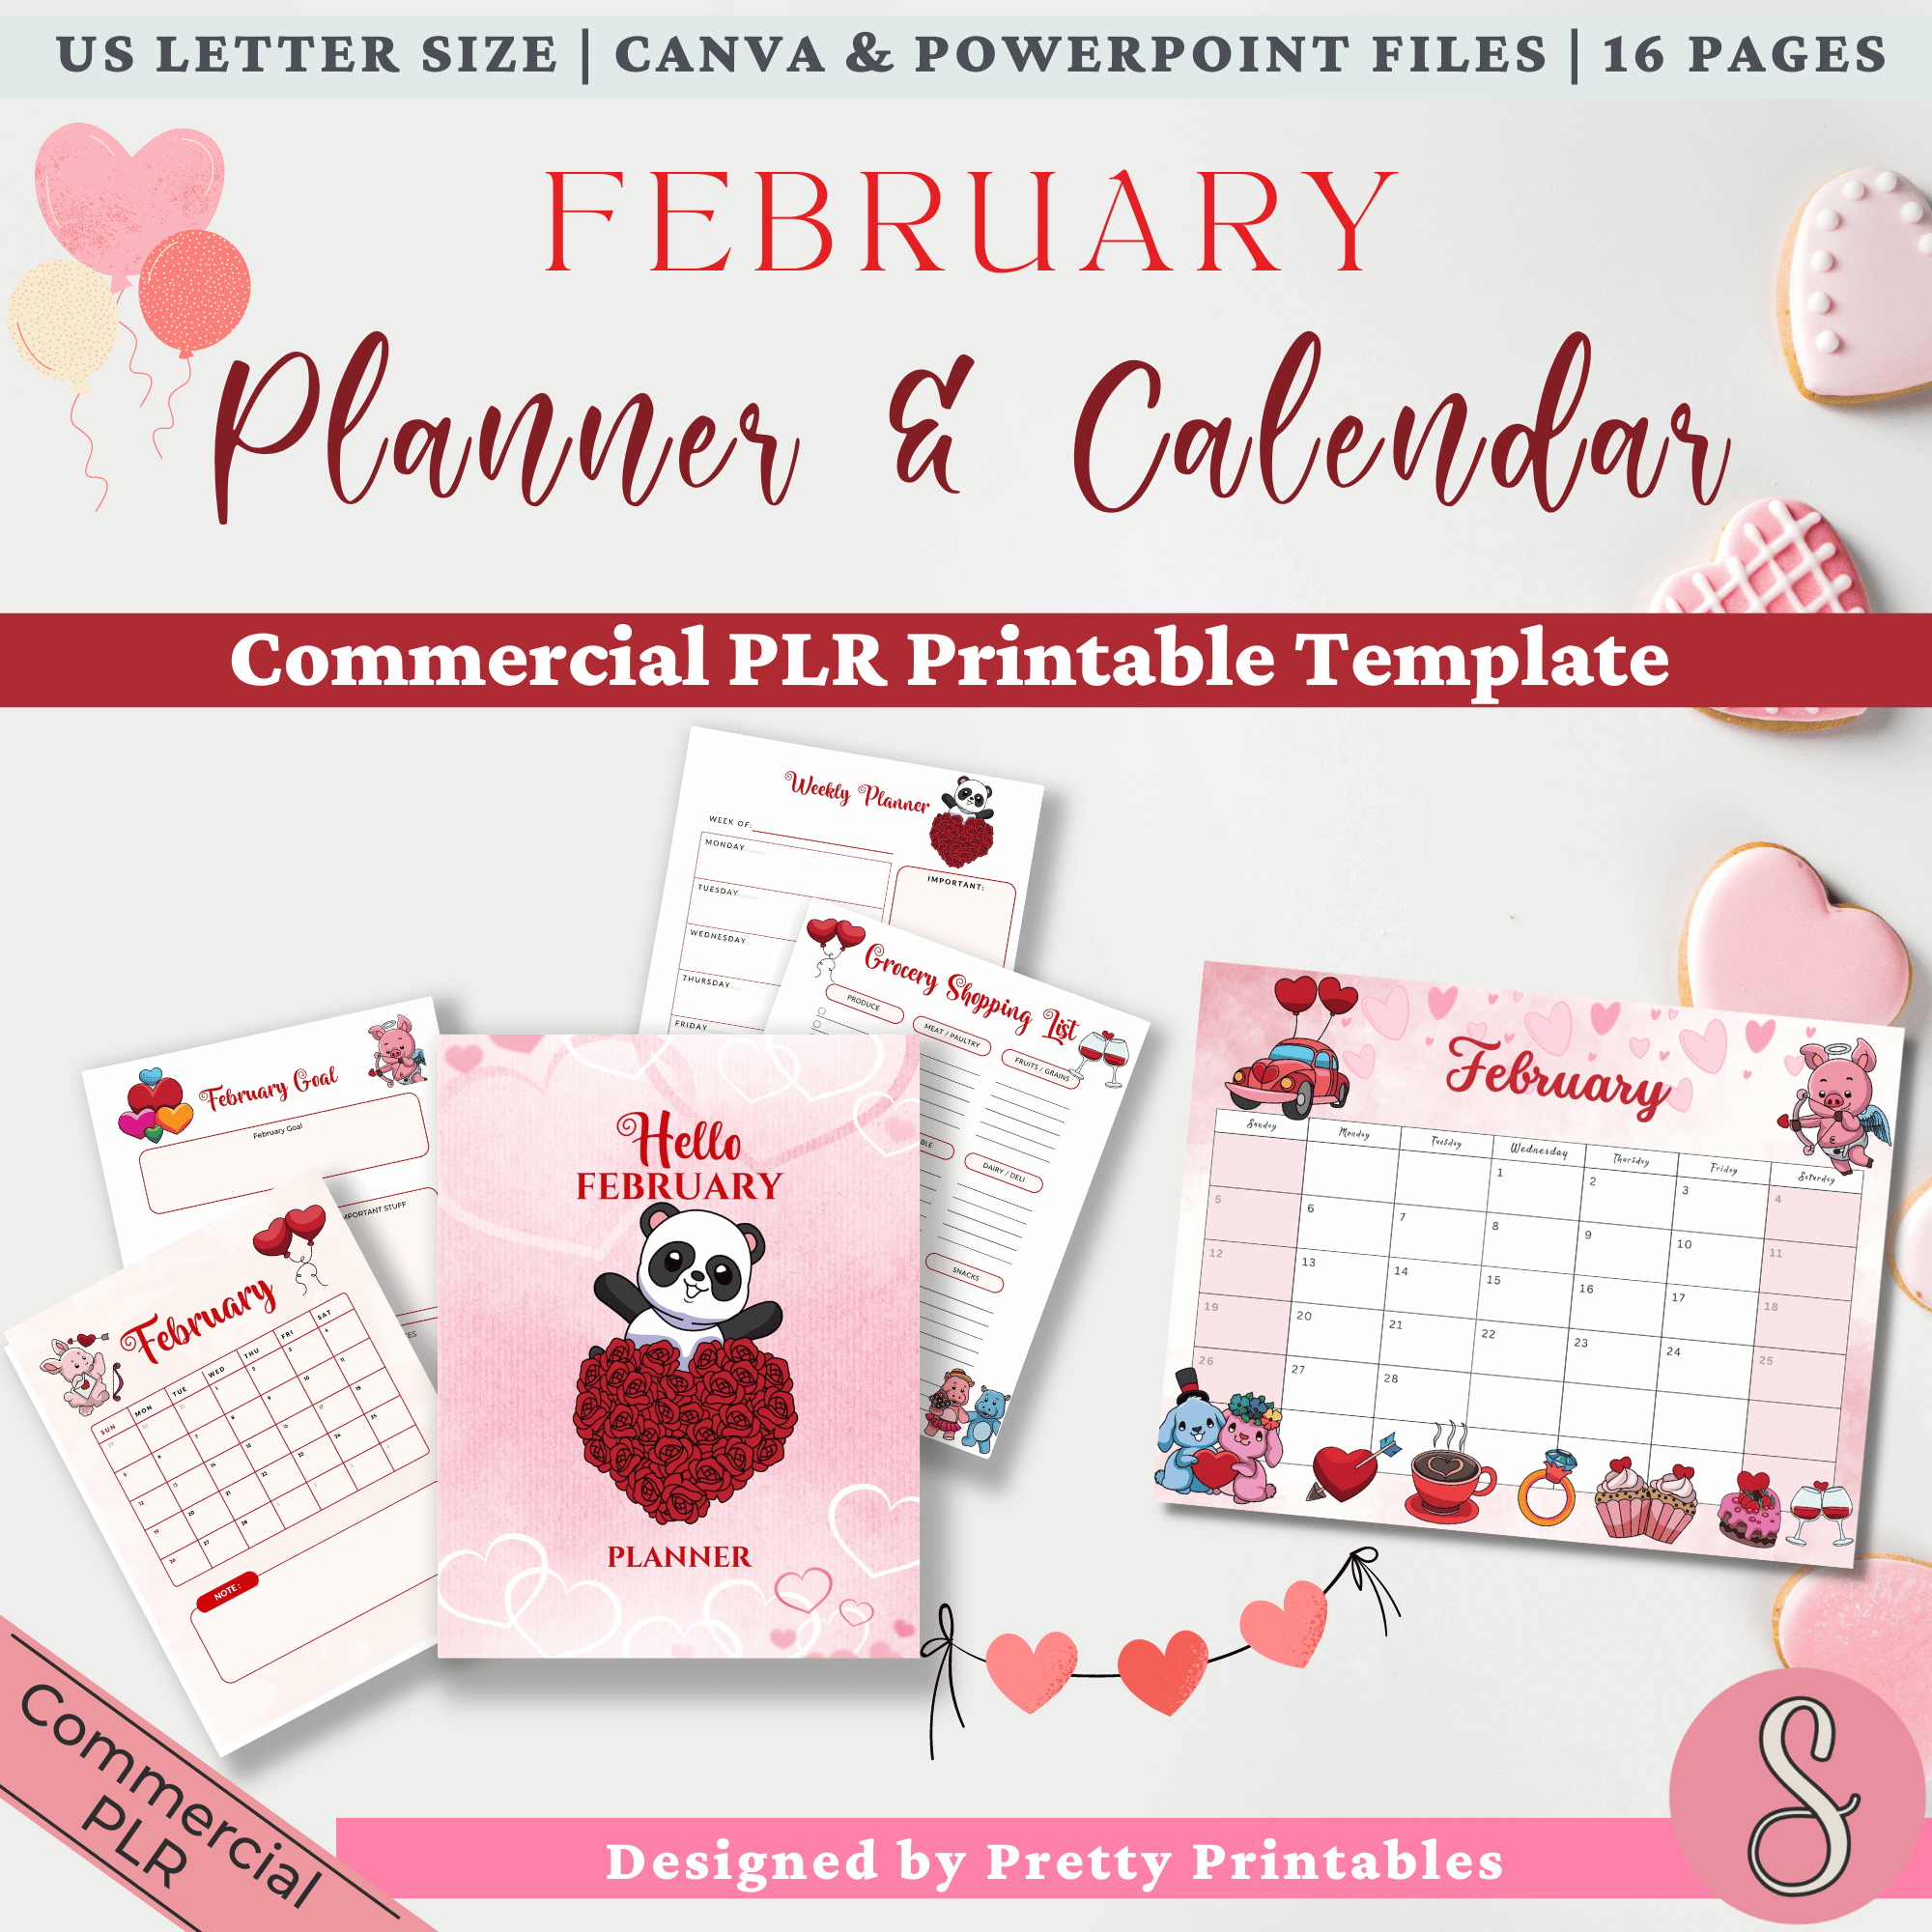 February Planner & Calendar Commercial PLR Printable Template